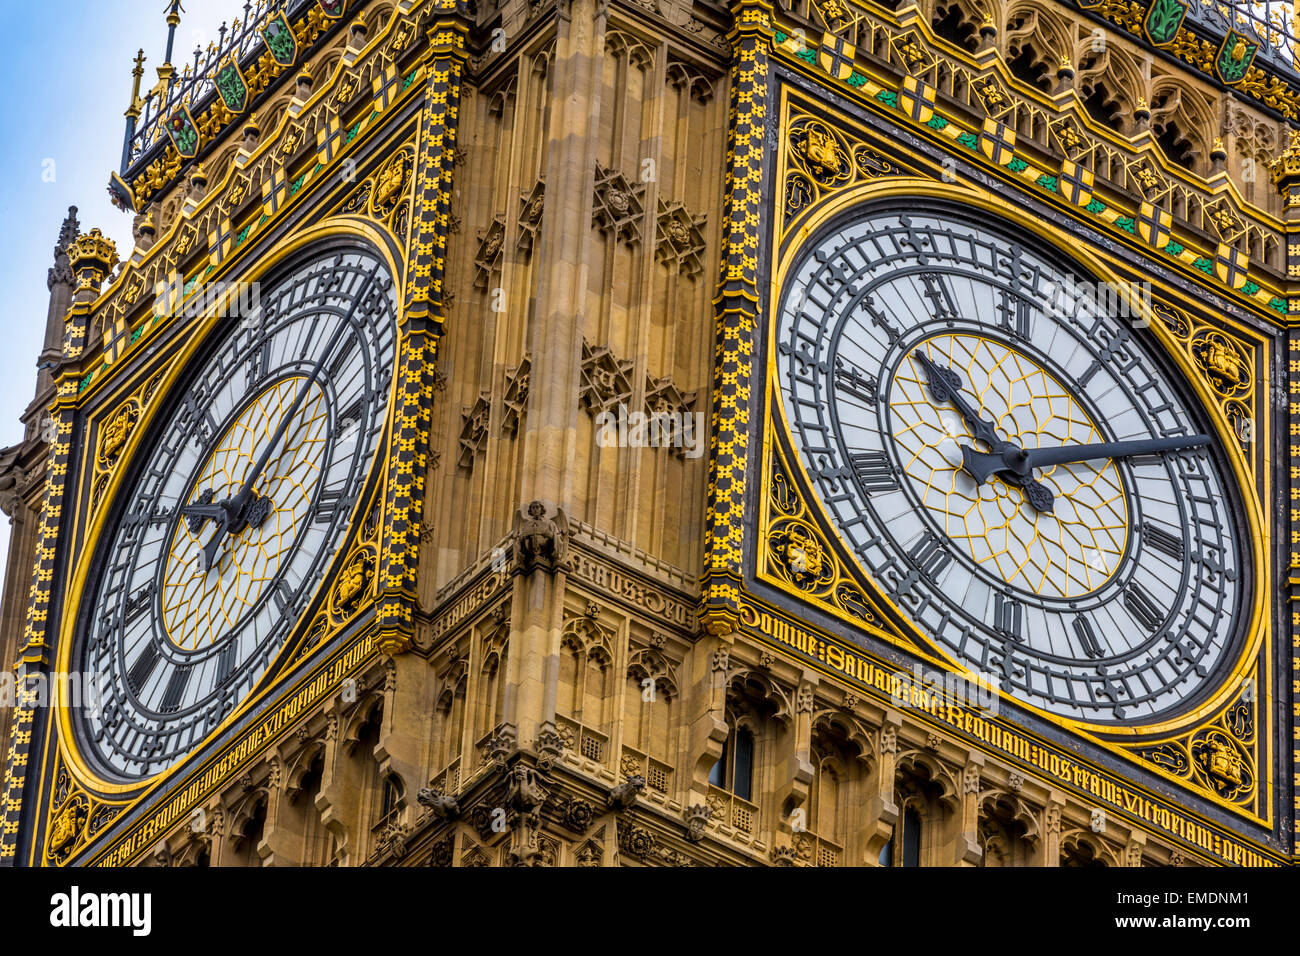 Ein helles Bild in der Nähe von Big Ben, die offiziell als Das Elizabeth Tower am nördlichen Ende der Houses of Parliament London England Großbritannien Stockfoto